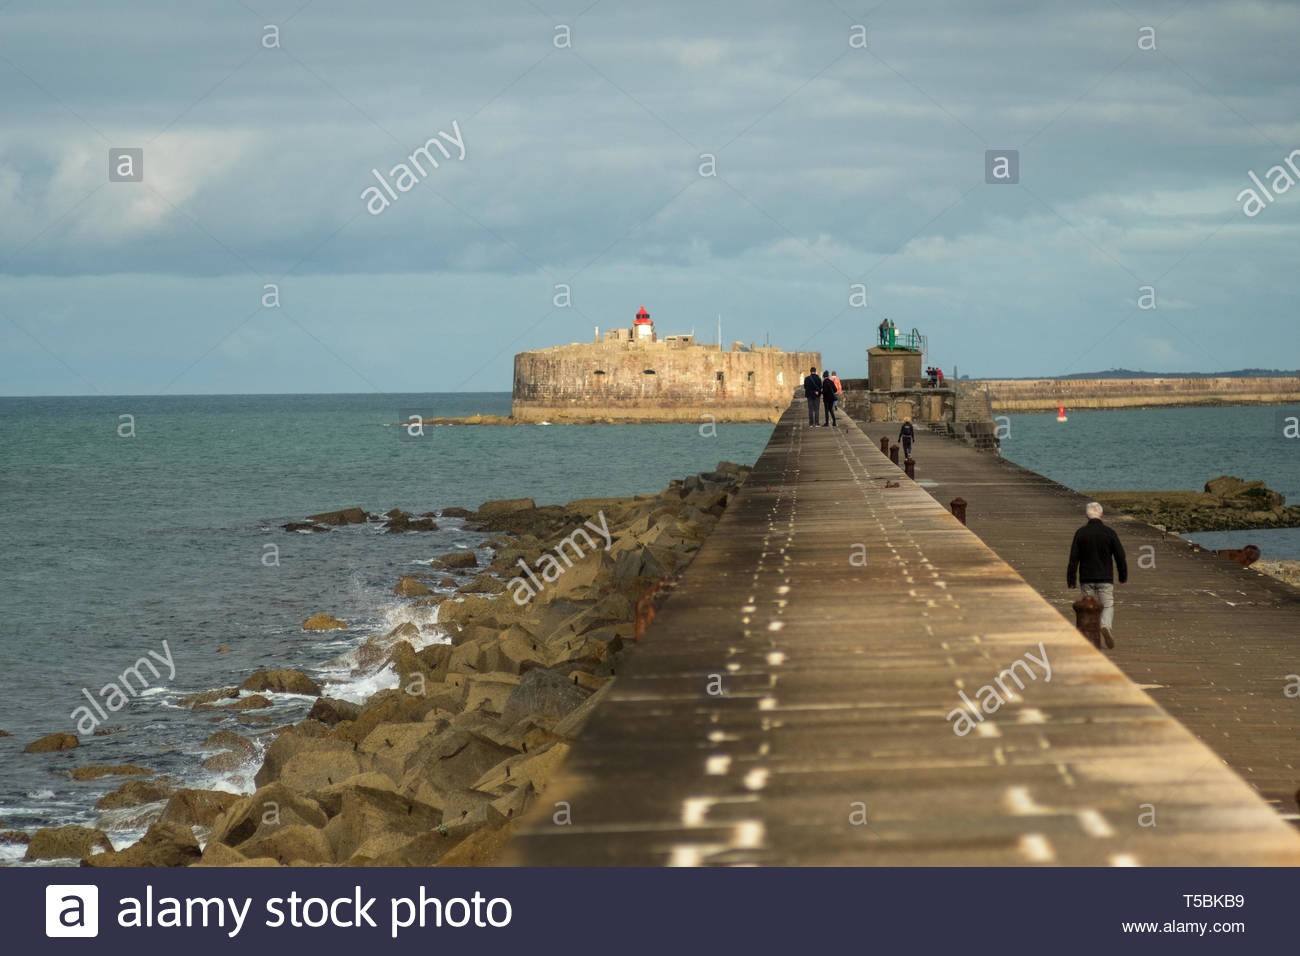 Cherbourg octeville france 27 aout 2018 les gens marchent sur les fortifications digue dans le port de cherbourg normandie france t5bkb9 1 